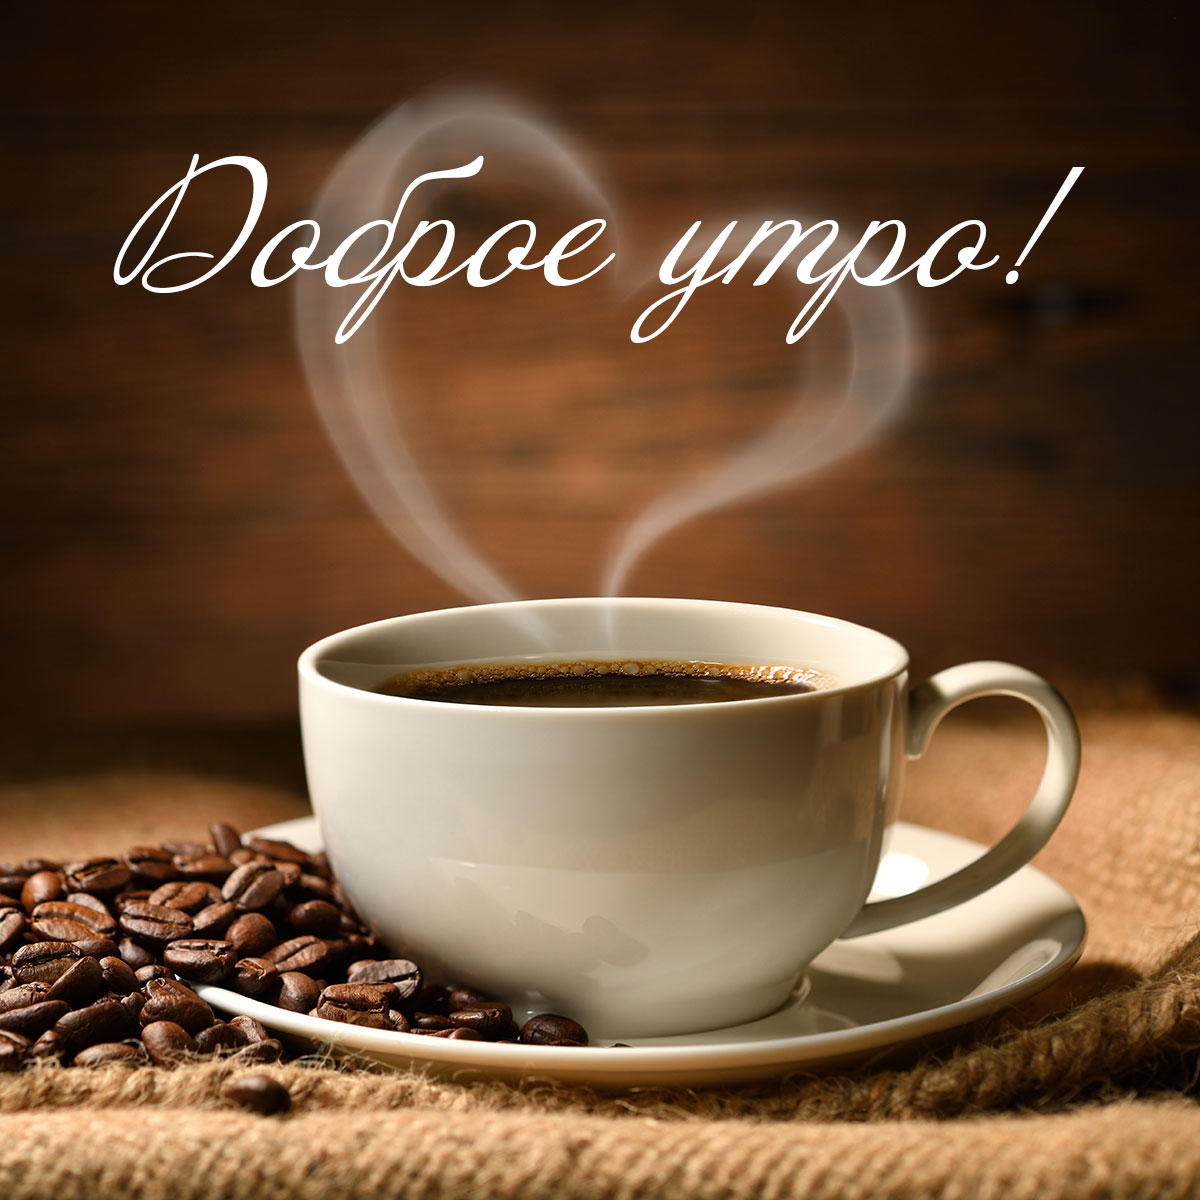 Открытка с добрым утром с фото чашки кофе с рассыпанными кофейными зернами на блюдце.